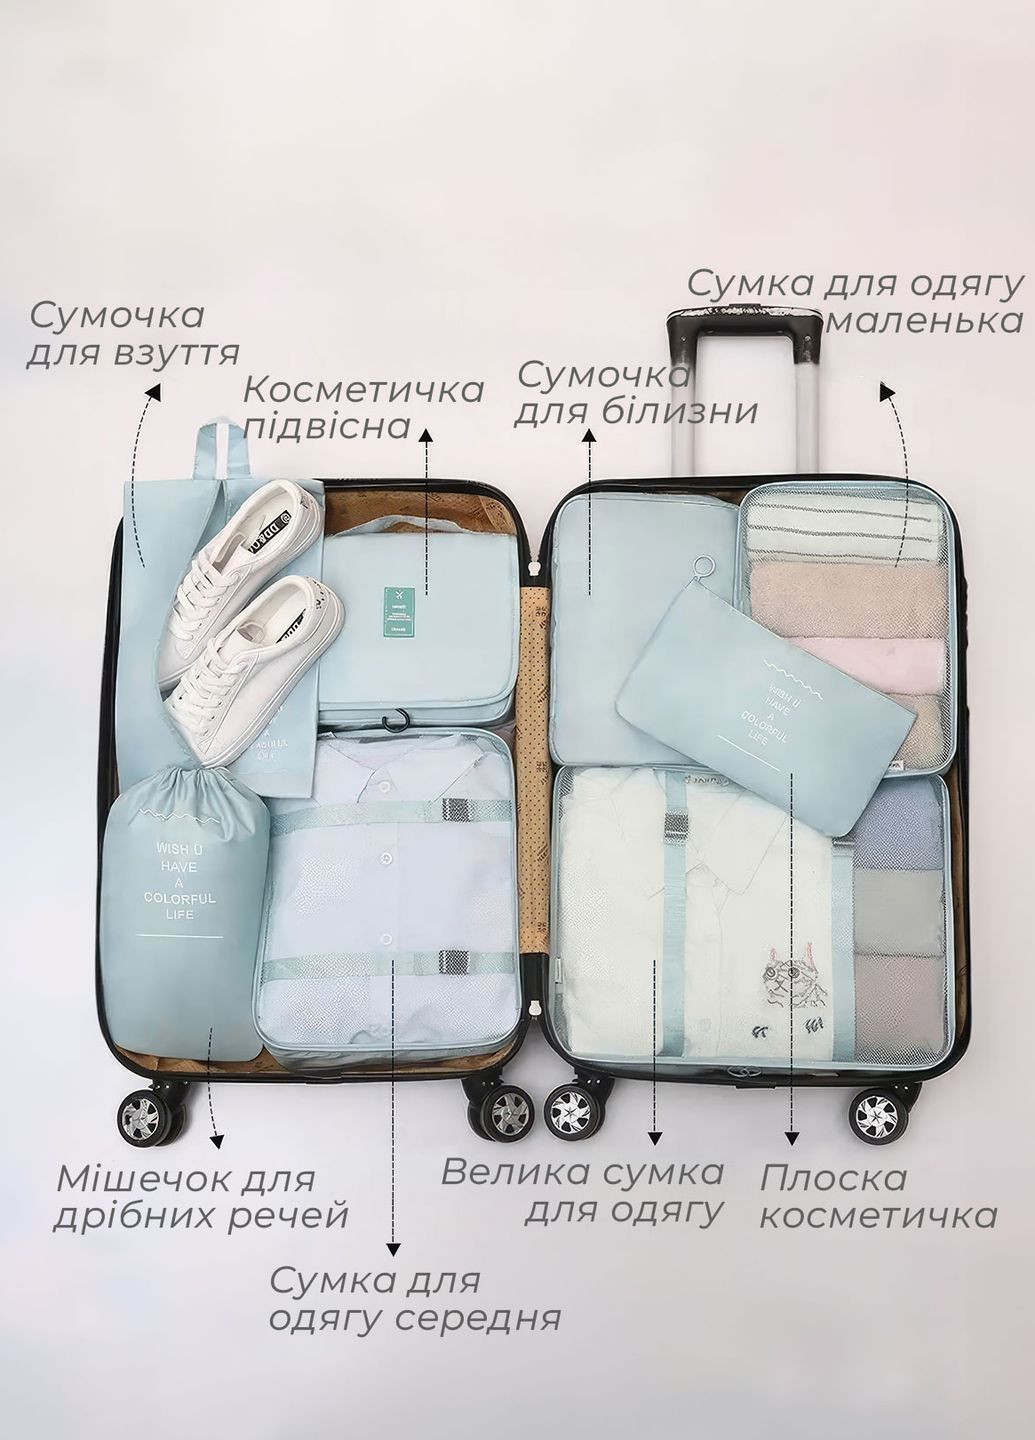 Набор дорожных сумок органайзеров для чемодана / комплект из 8 дорожных органайзеров Бирюзовый 68393 OnePro (264921226)